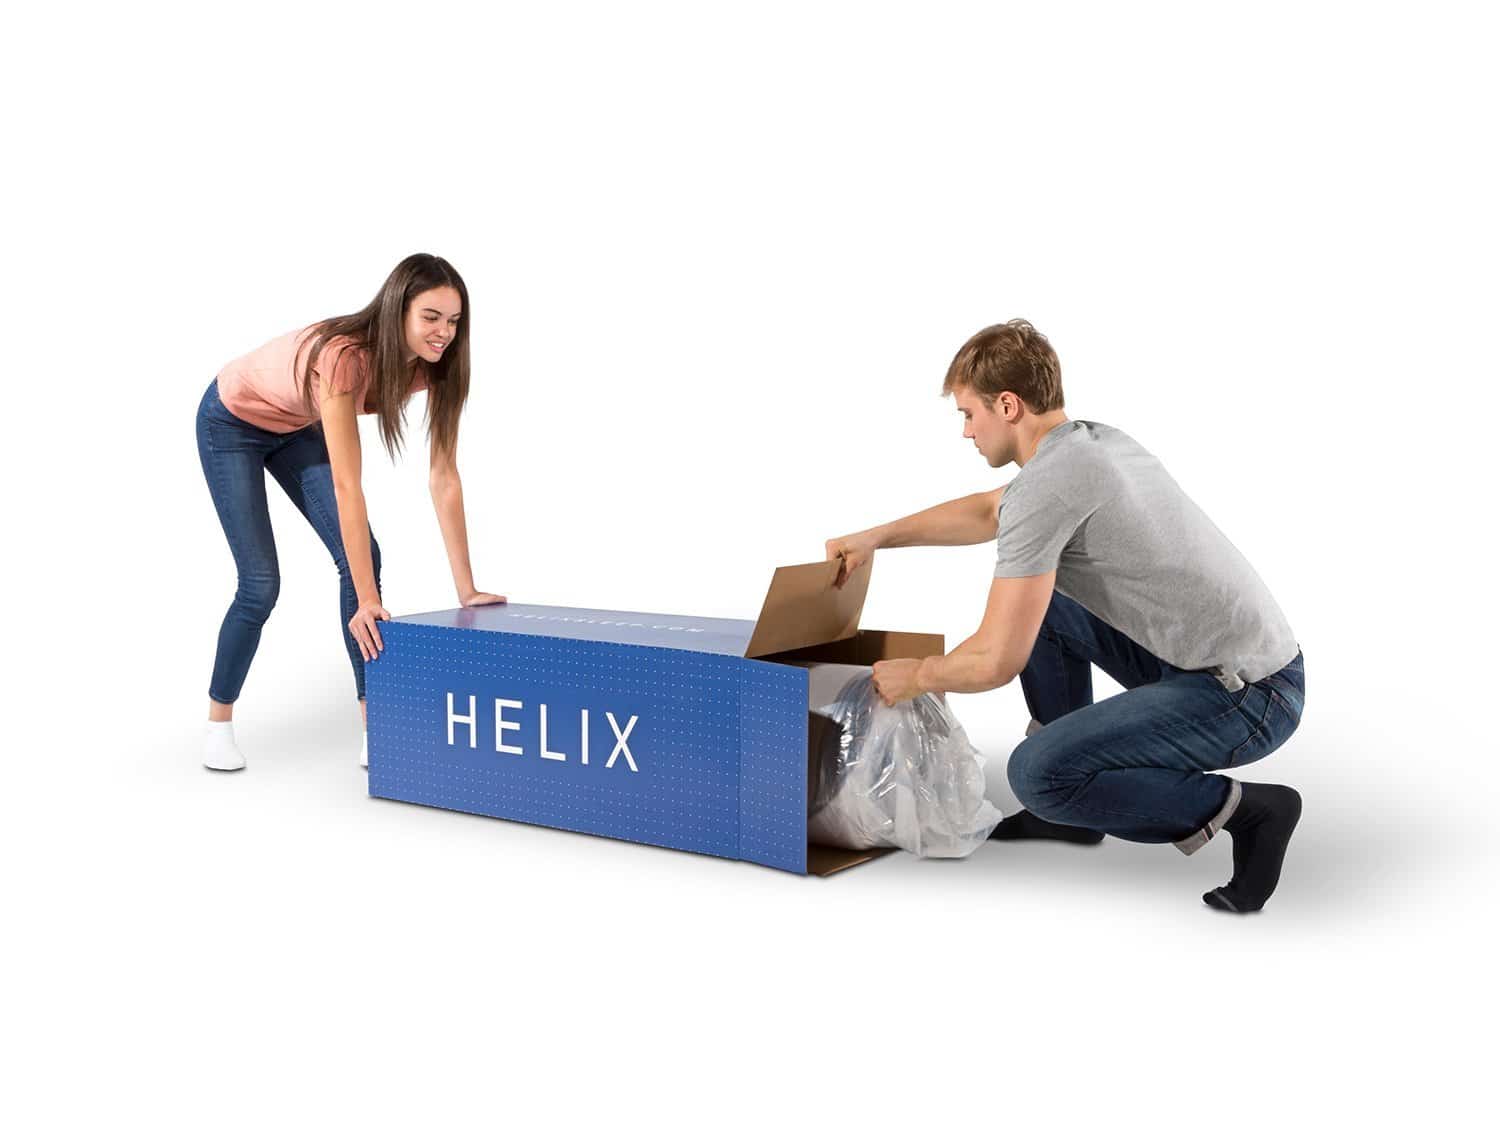 Helix Mattress in a box